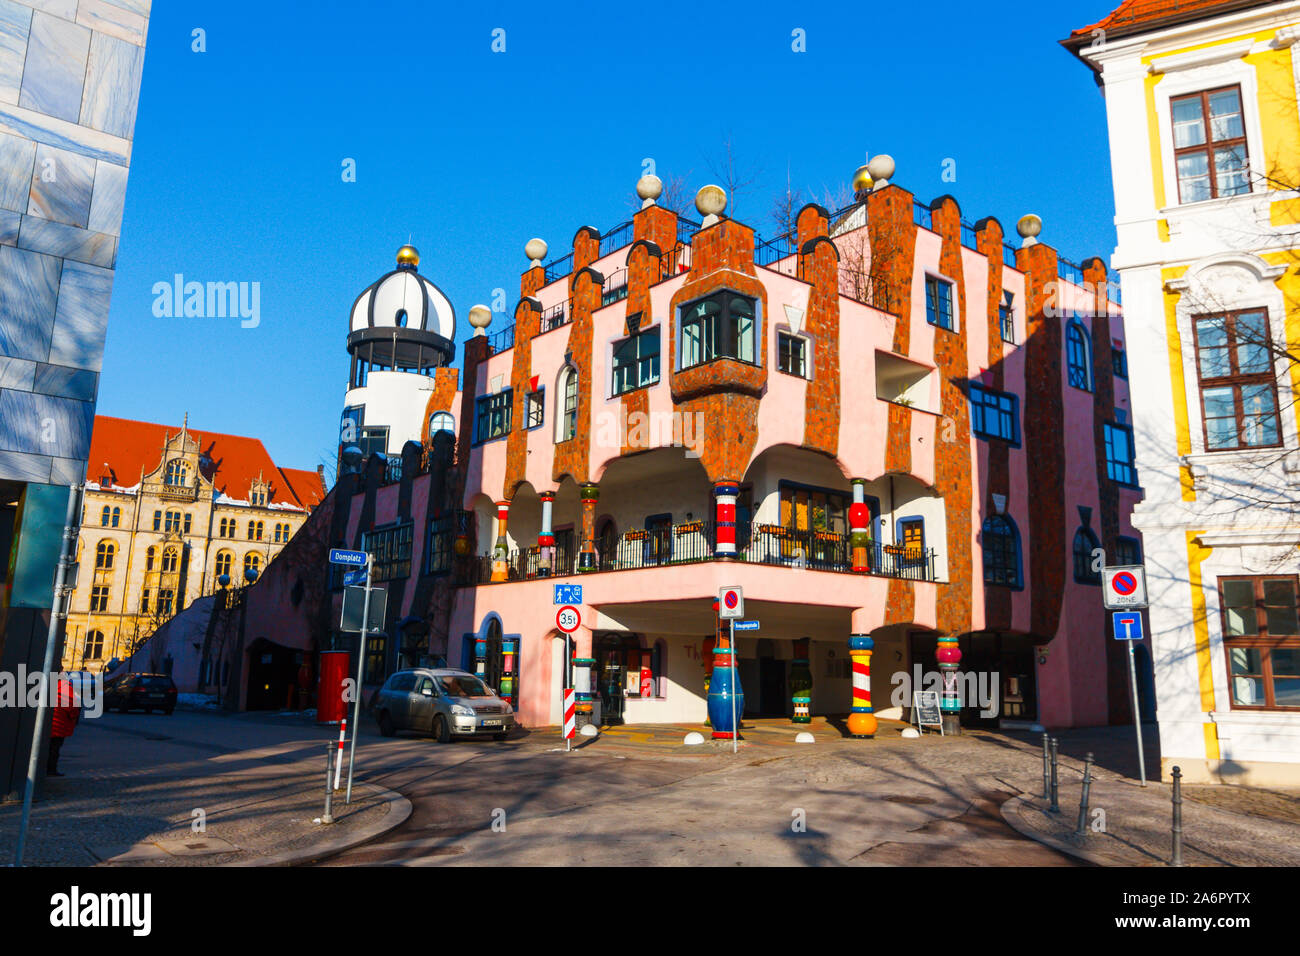 Magdeburg, Allemagne - 25 Février 2019 : construction d'art Hundertwasser avec mosaïque. Un coin café en face de deux-points de maison Hundertwasser Banque D'Images